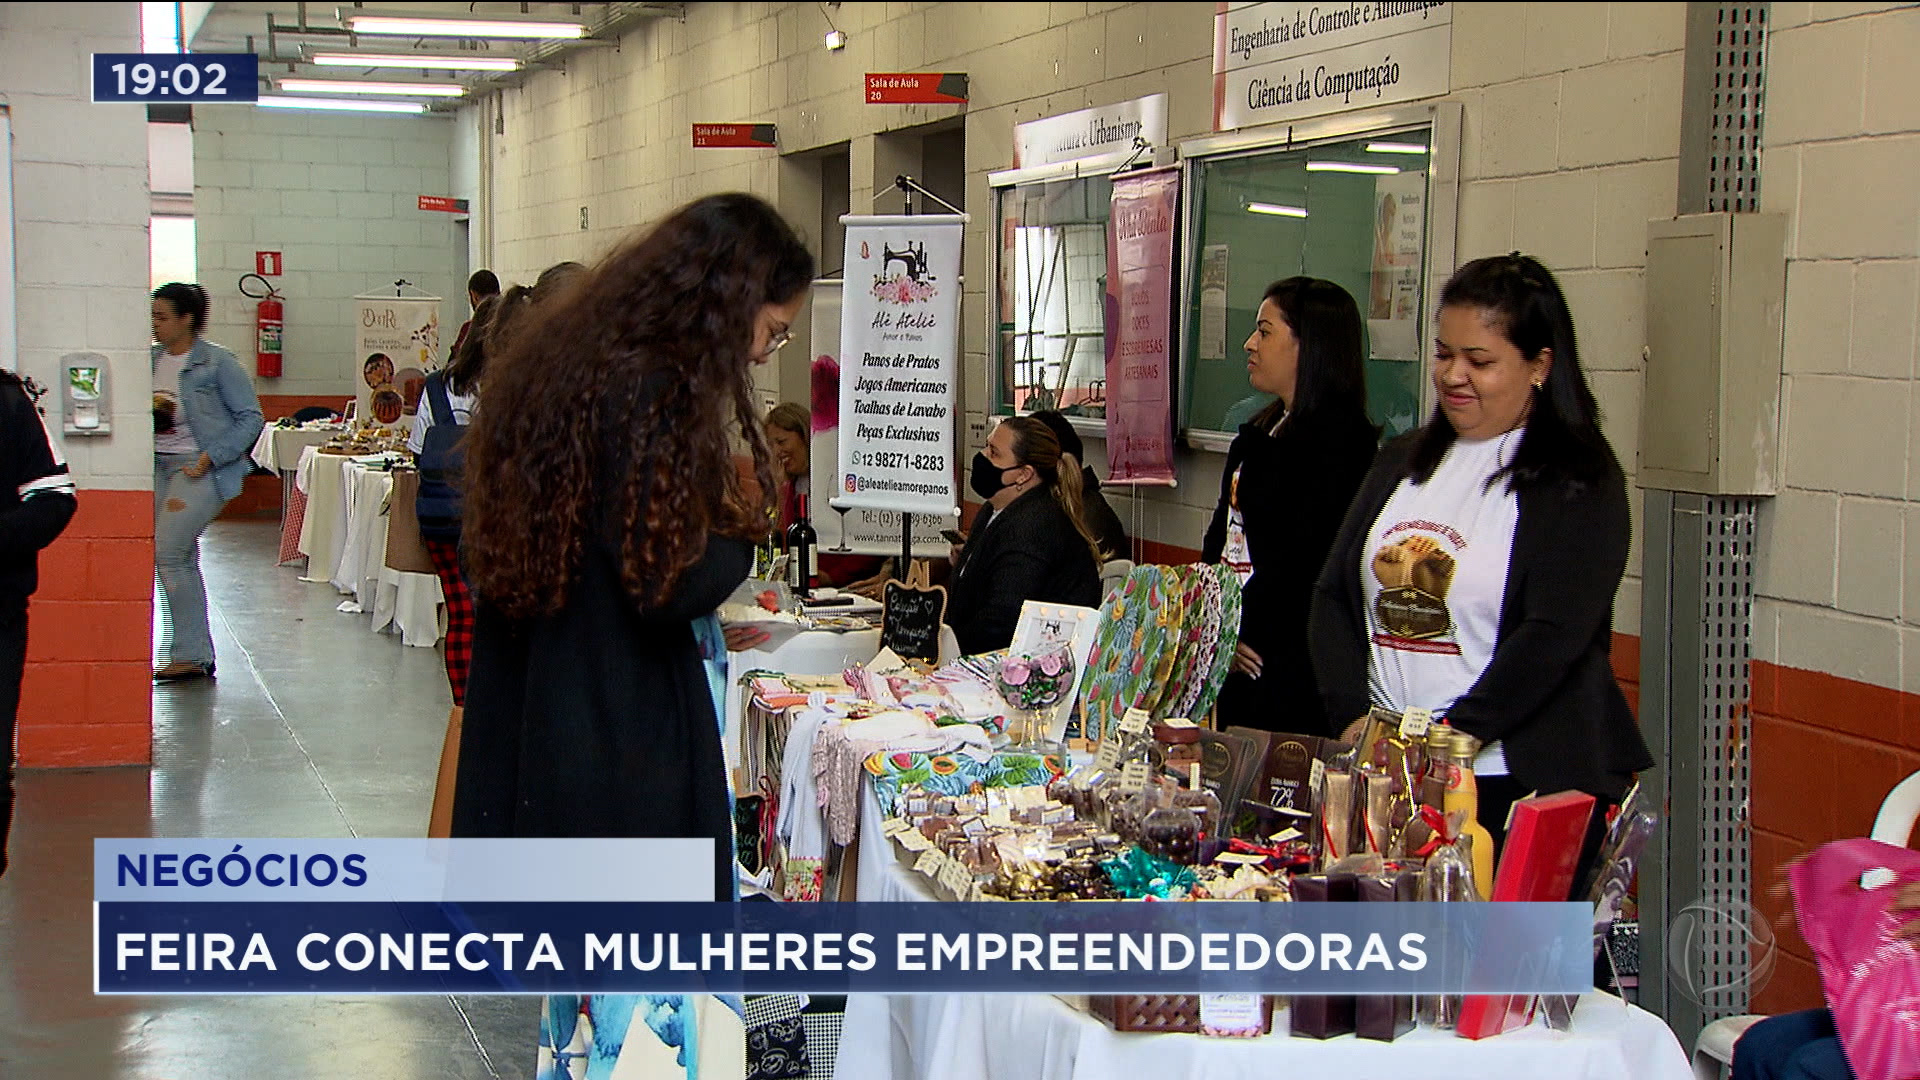 Vídeo: Empreendedorismo feminino é tema de evento em Taubaté